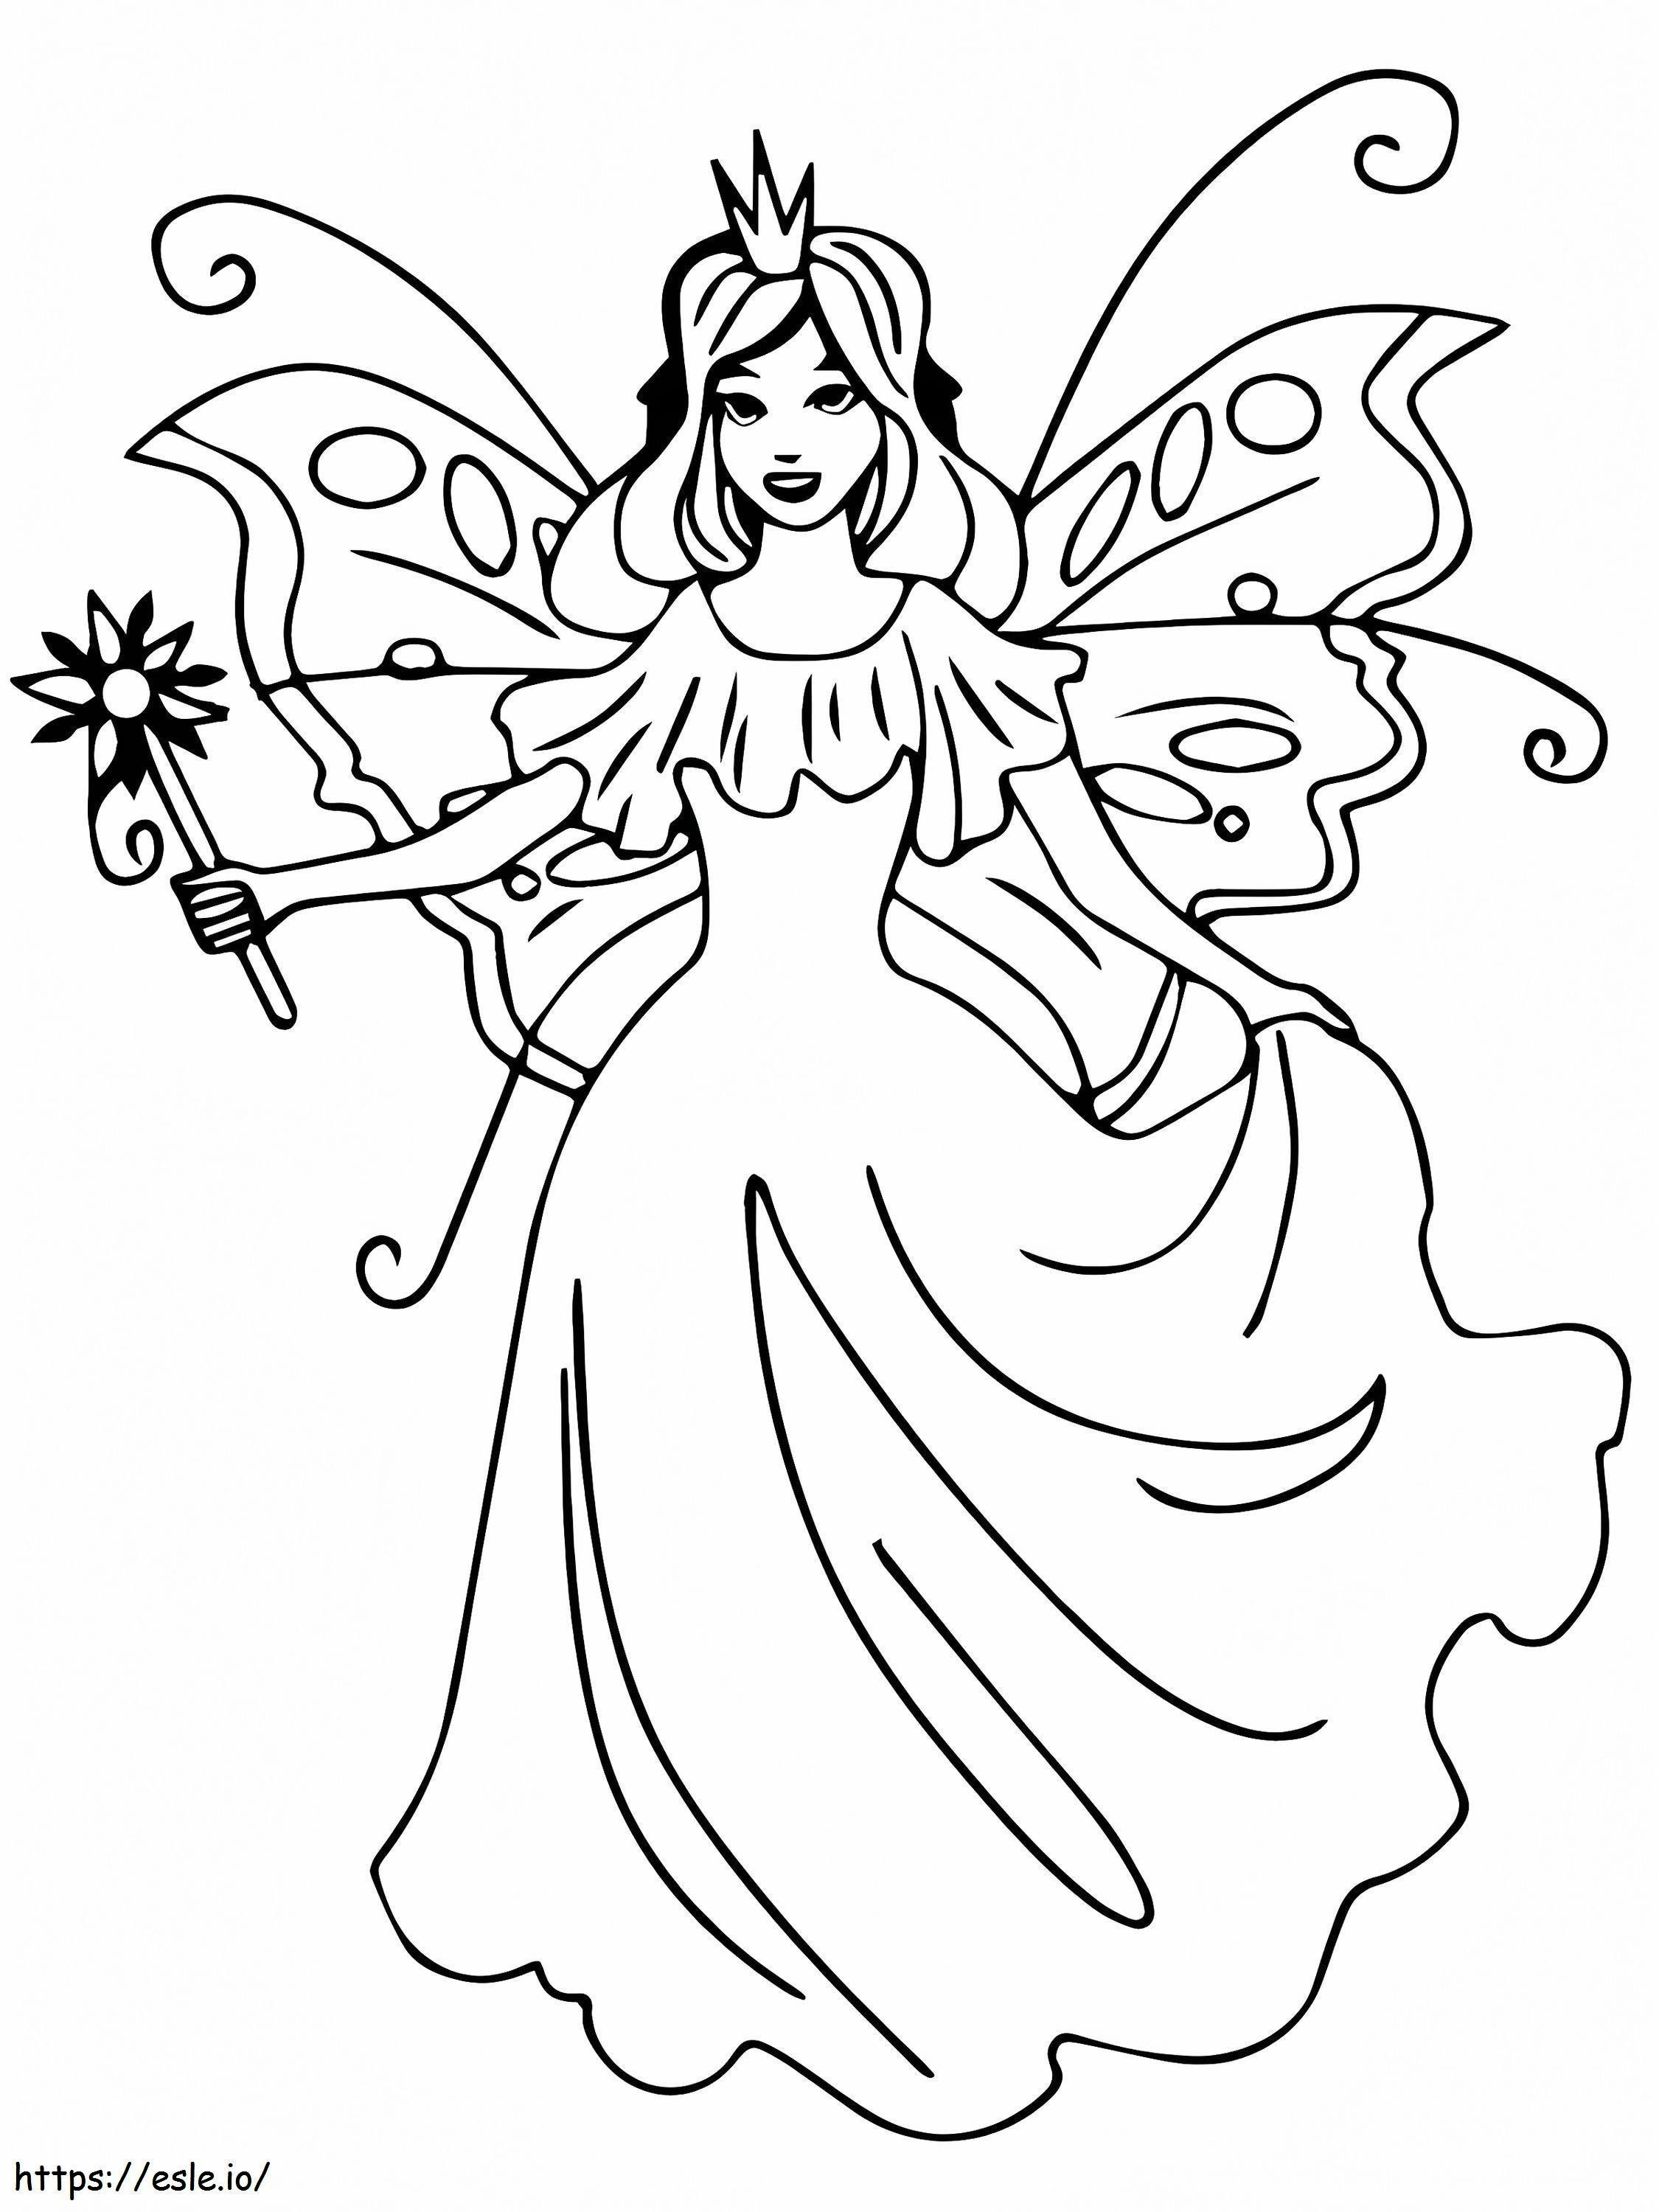 Coloriage Admirable fée princesse à imprimer dessin